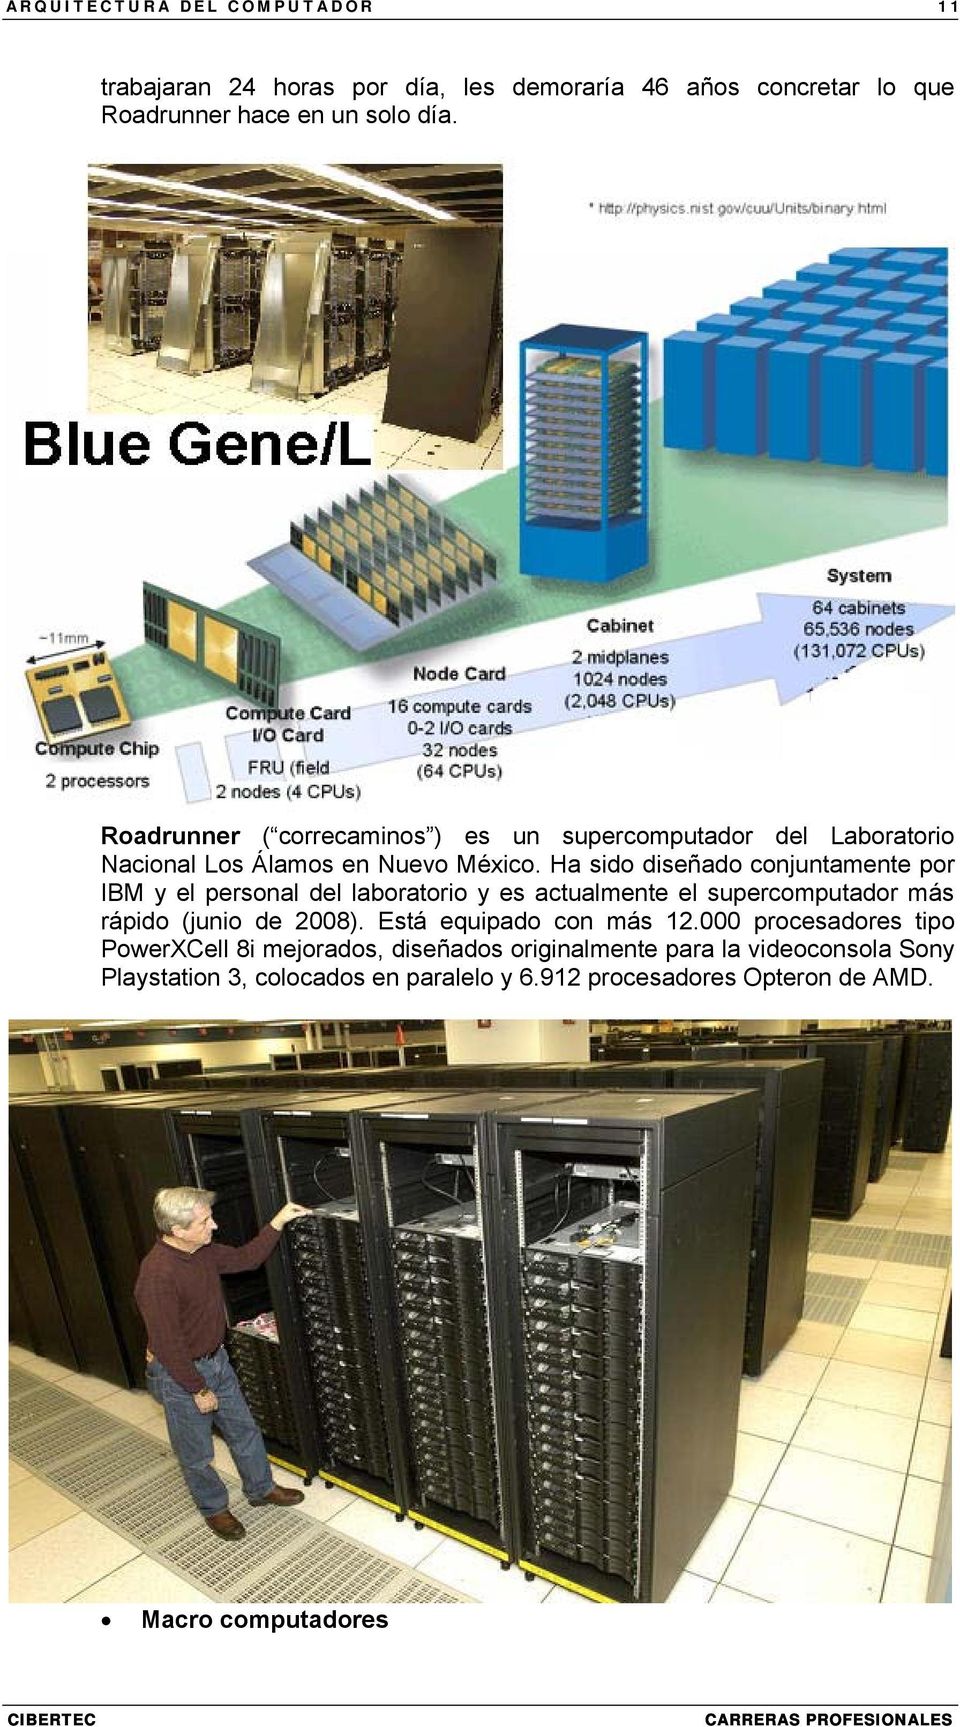 Ha sido diseñado conjuntamente por IBM y el personal del laboratorio y es actualmente el supercomputador más rápido (junio de 2008).